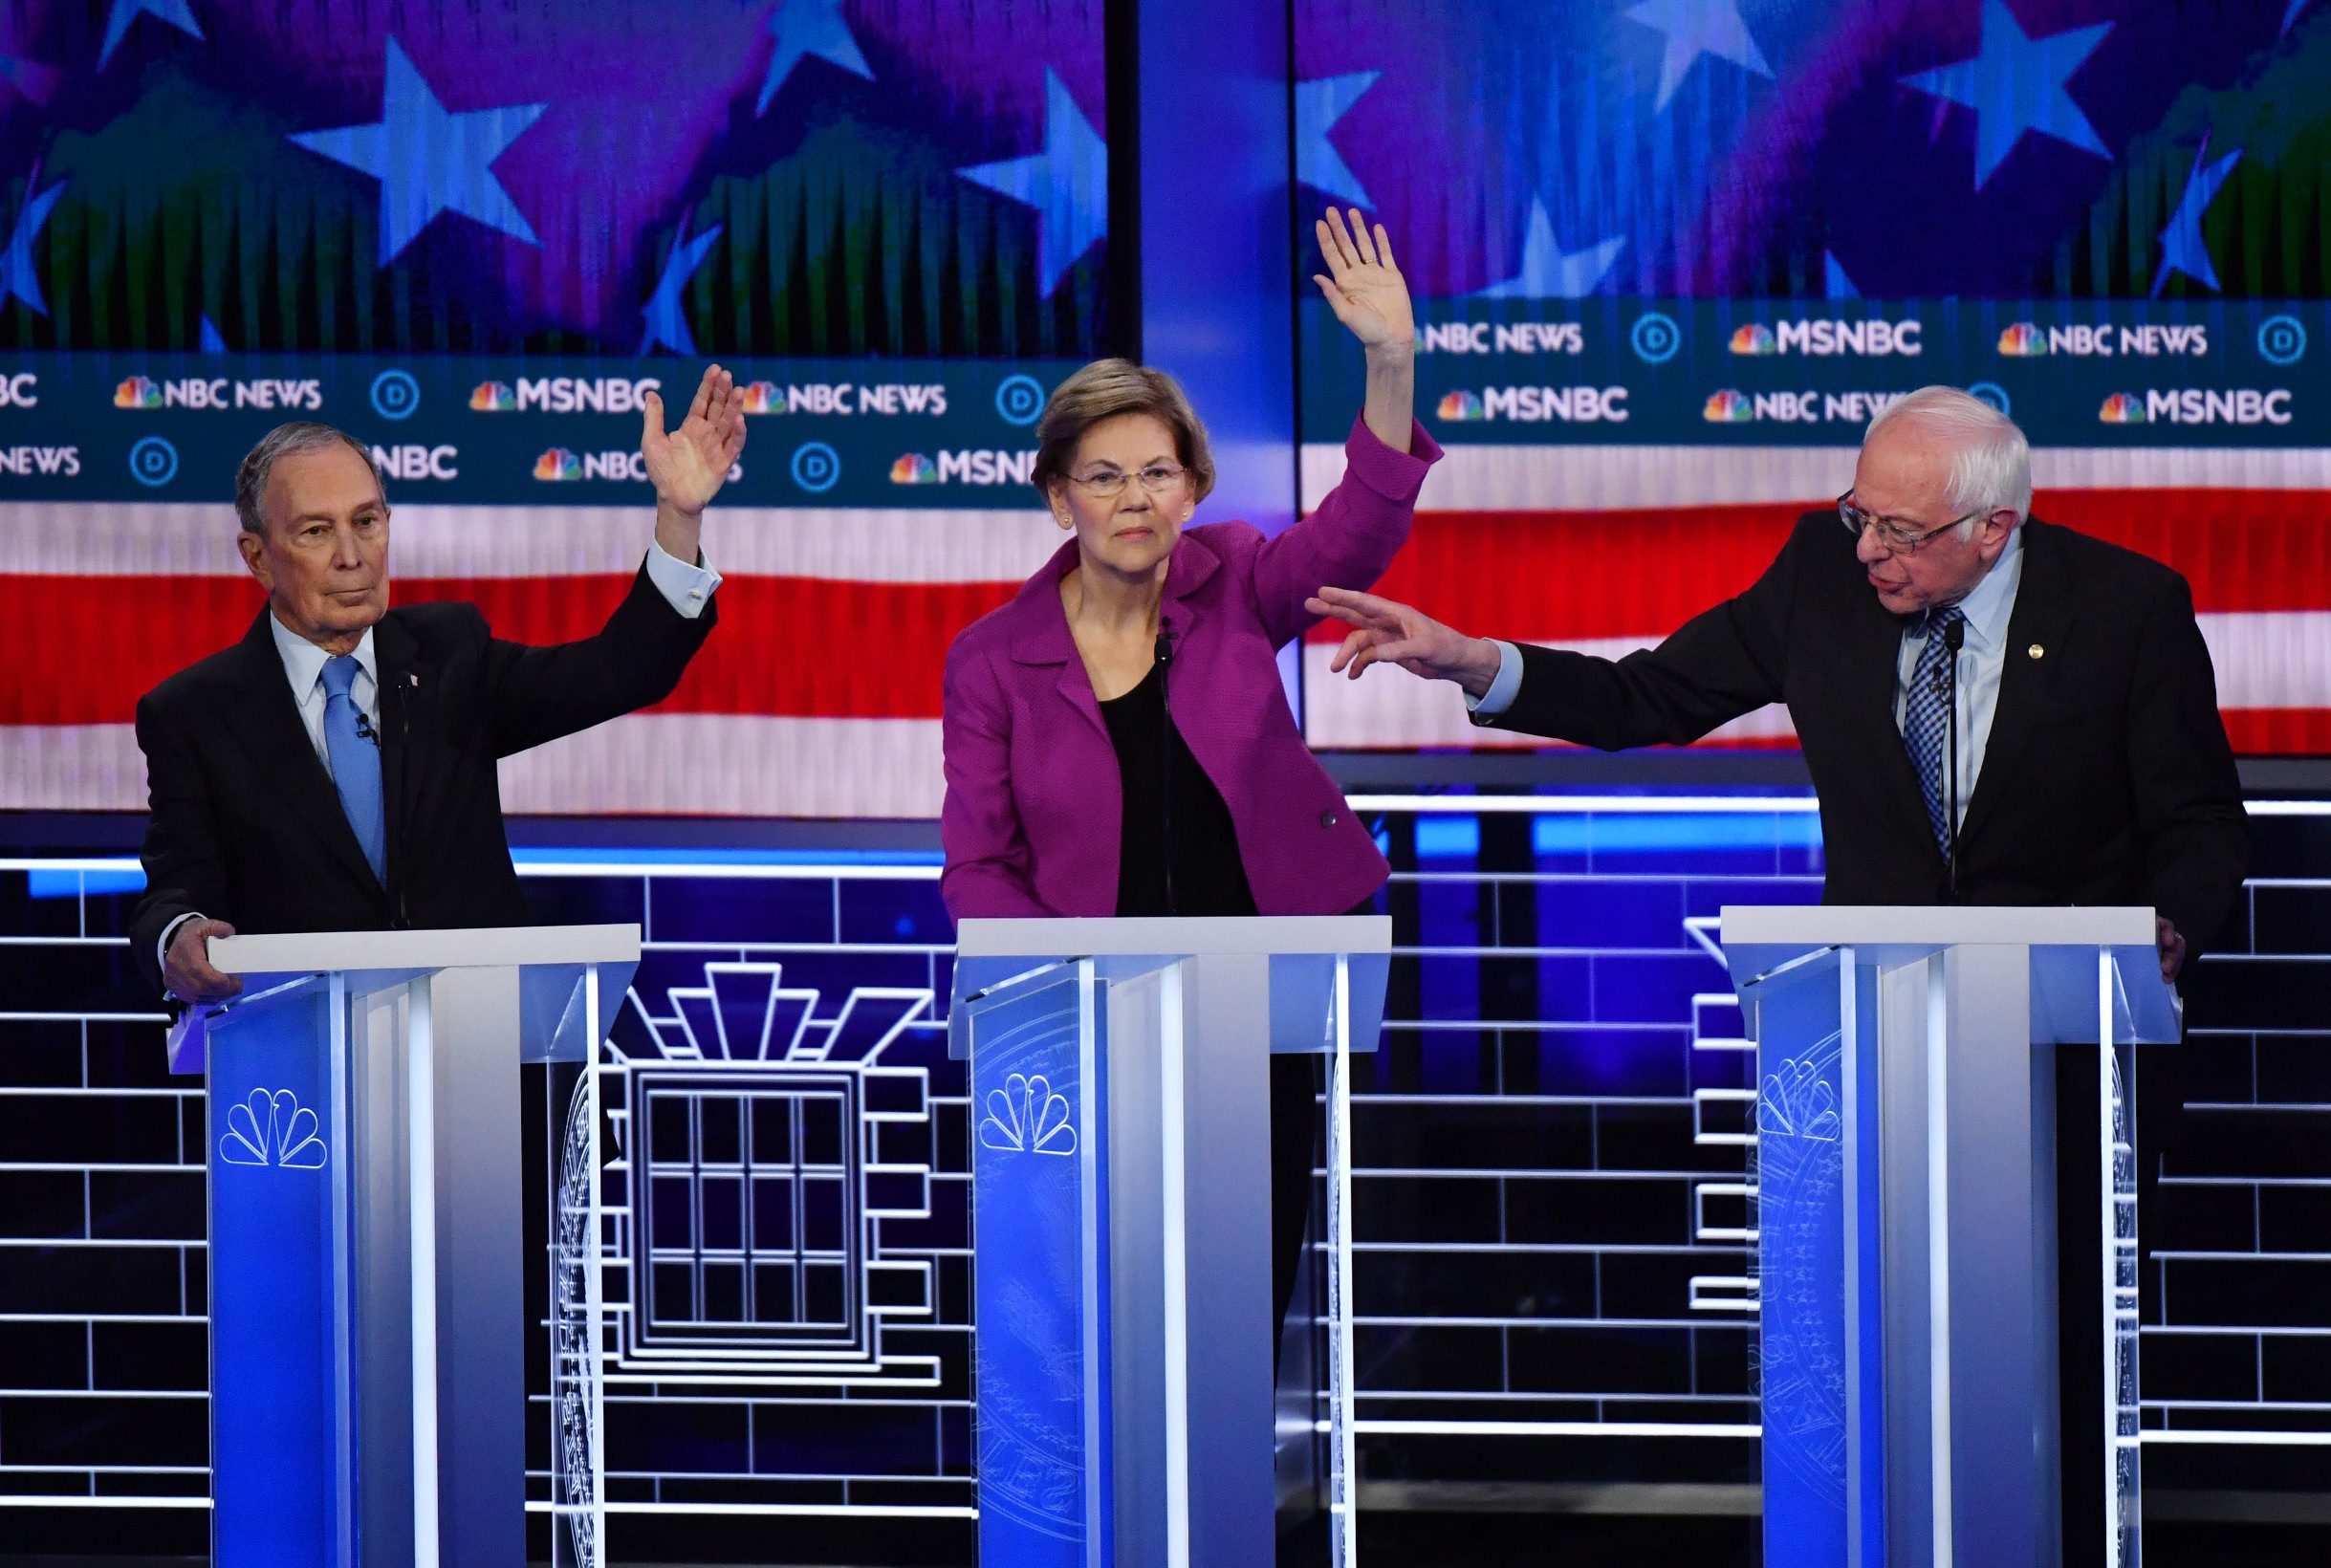 Kandidati Demokratske stranke na pozornici tijekom debate u Las Vegasu, na slici: Michael Bloomberg (lijevo), Elizabeth Warren i Bernie Sanders